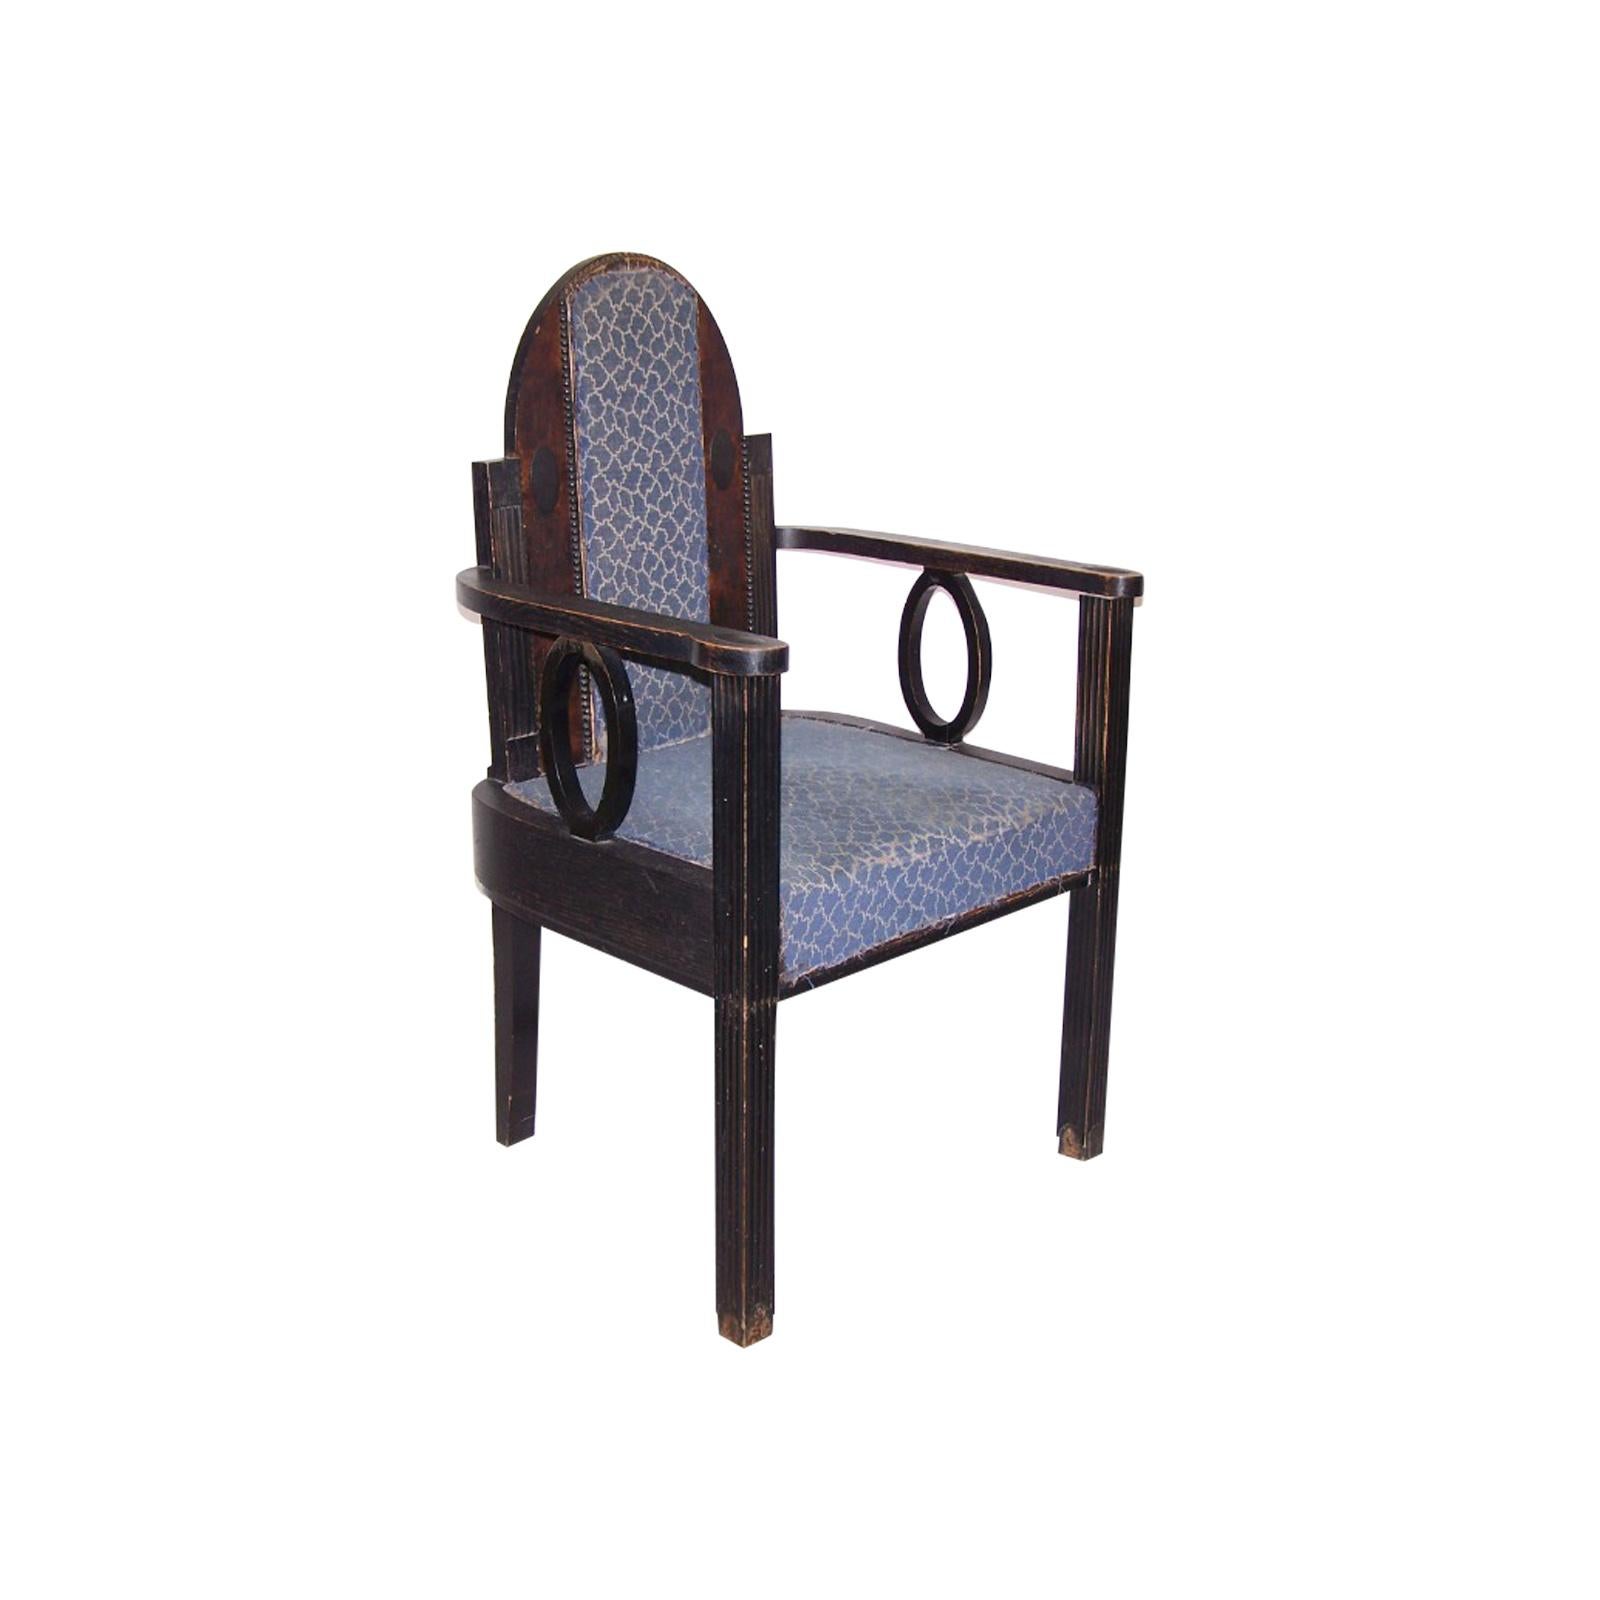 Ein außergewöhnlicher Stuhl im Originalzustand. Wird auf Anfrage wiederhergestellt.